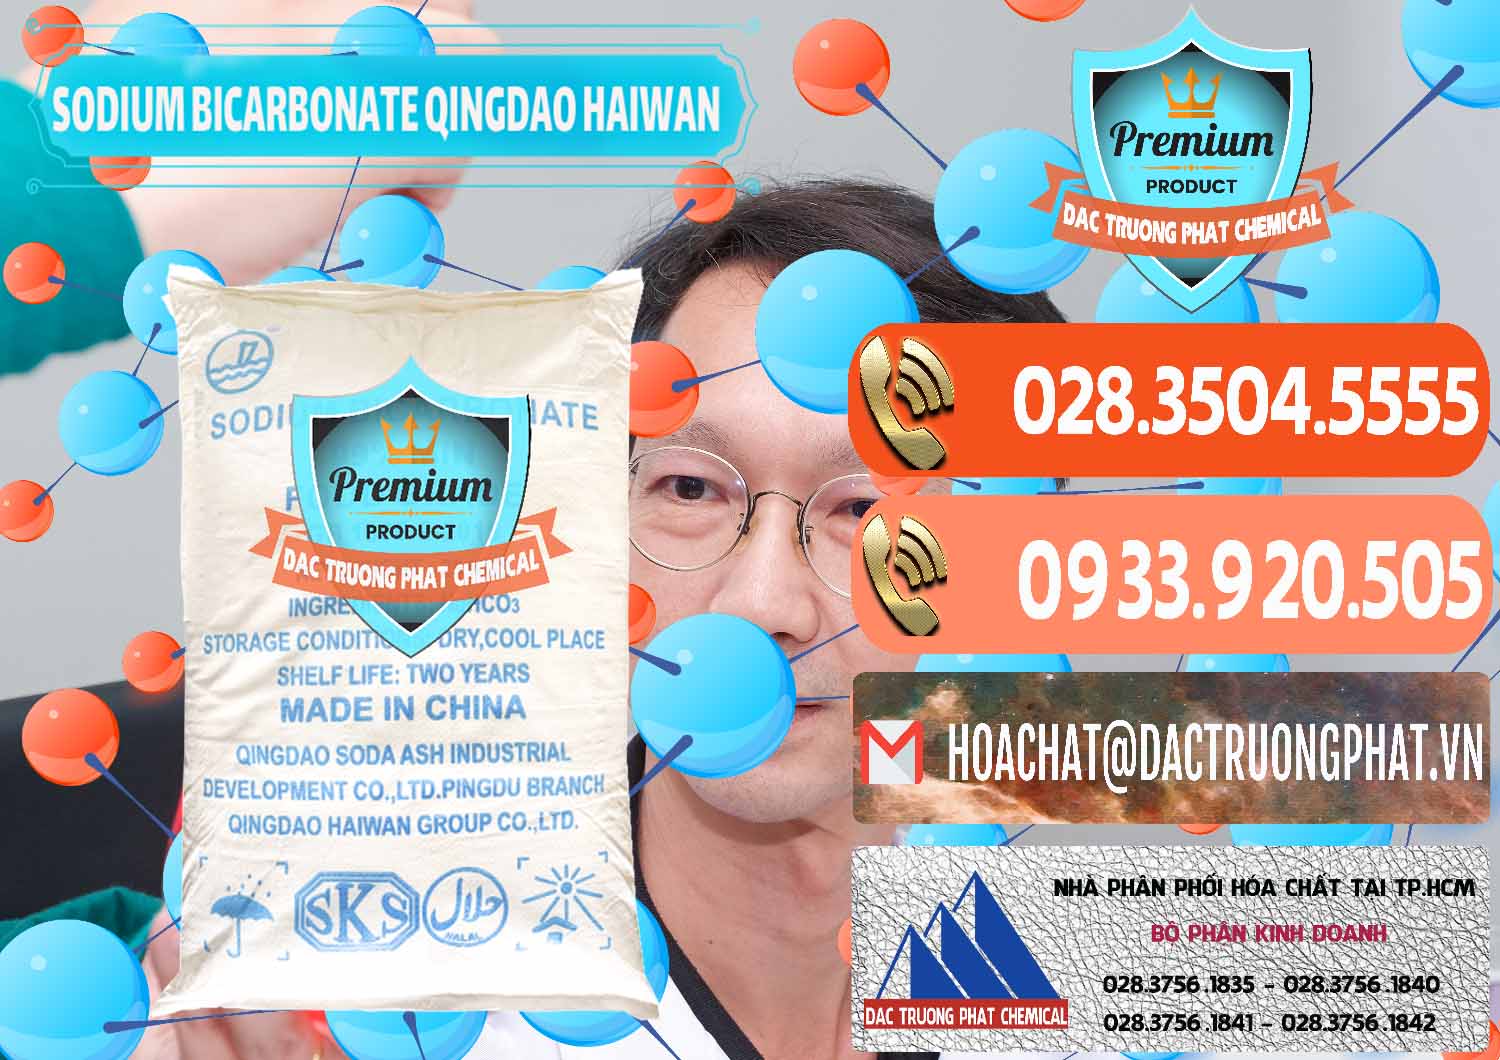 Chuyên phân phối - bán Sodium Bicarbonate – Bicar NaHCO3 Food Grade Qingdao Haiwan Trung Quốc China - 0258 - Nơi cung cấp & bán hóa chất tại TP.HCM - hoachatmientay.com